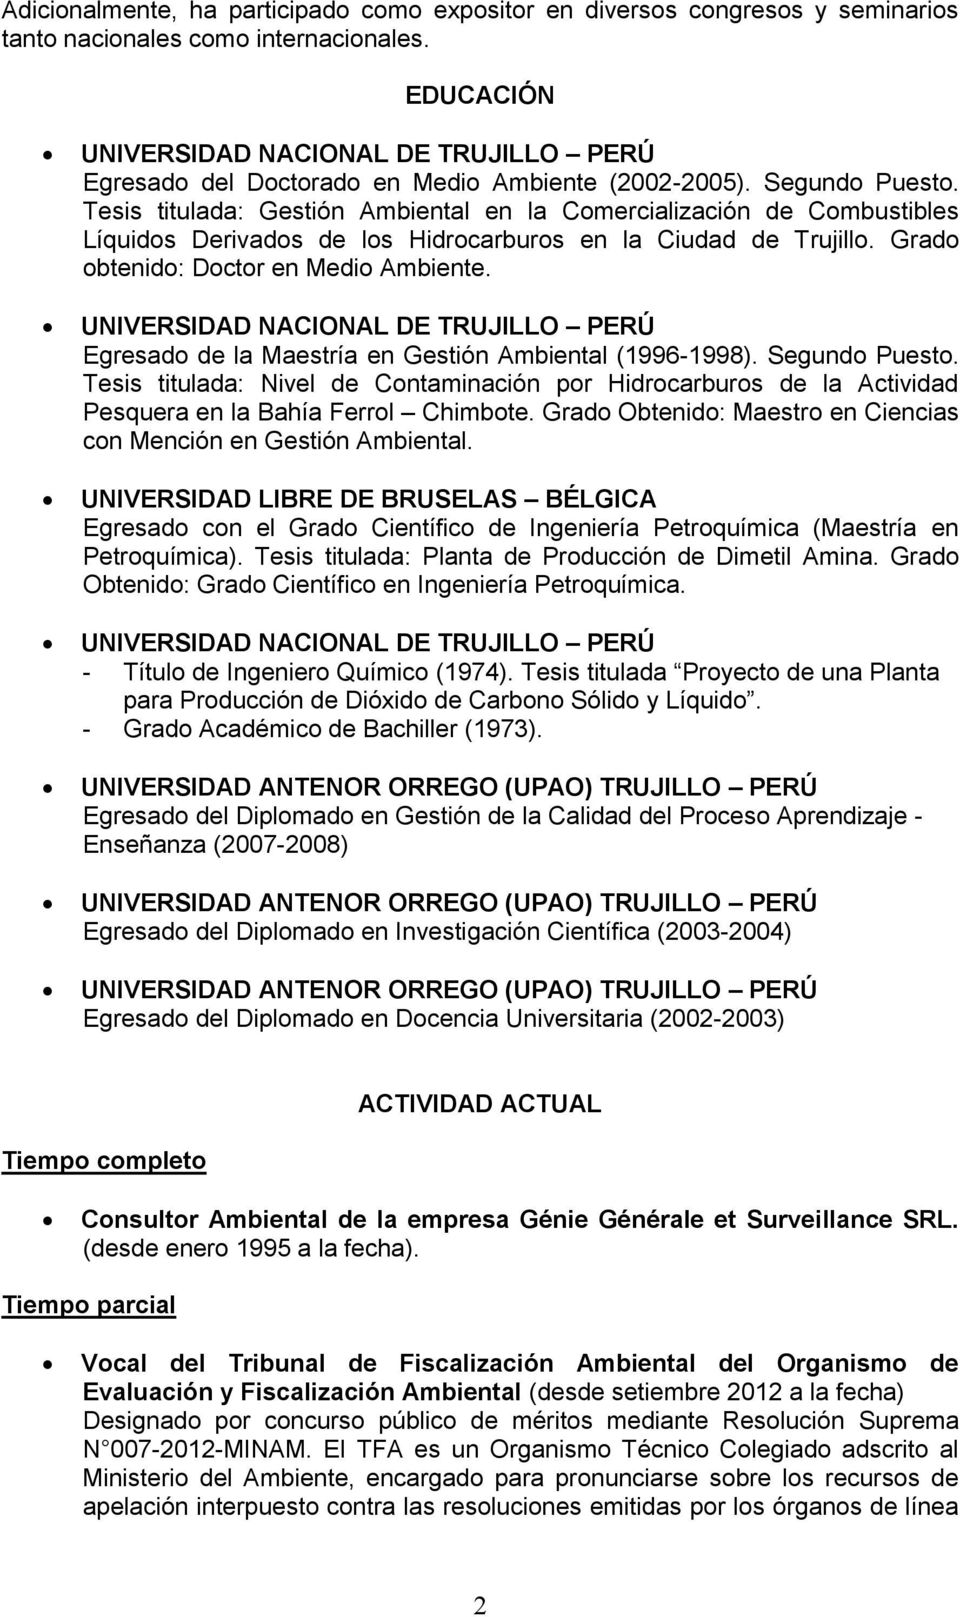 Tesis titulada: Gestión Ambiental en la Comercialización de Combustibles Líquidos Derivados de los Hidrocarburos en la Ciudad de Trujillo. Grado obtenido: Doctor en Medio Ambiente.